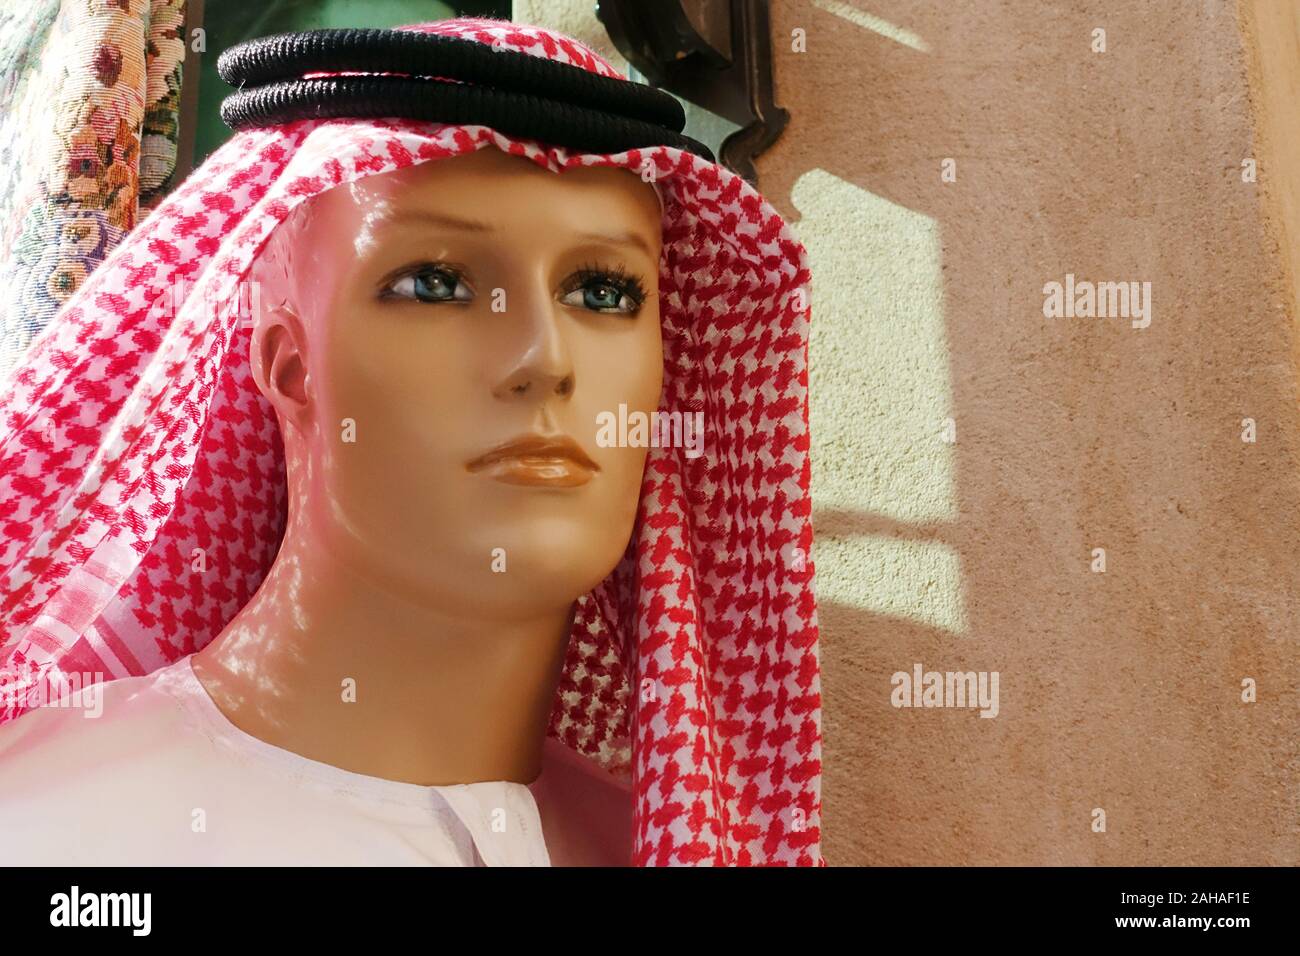 26.03.2018, Dubai, Dubai, Emiratos Árabes Unidos - Macho maniqui en ropa tradicional árabe. 00S180326D155CAROEX.JPG [modelo de liberación: no aplicable Foto de stock